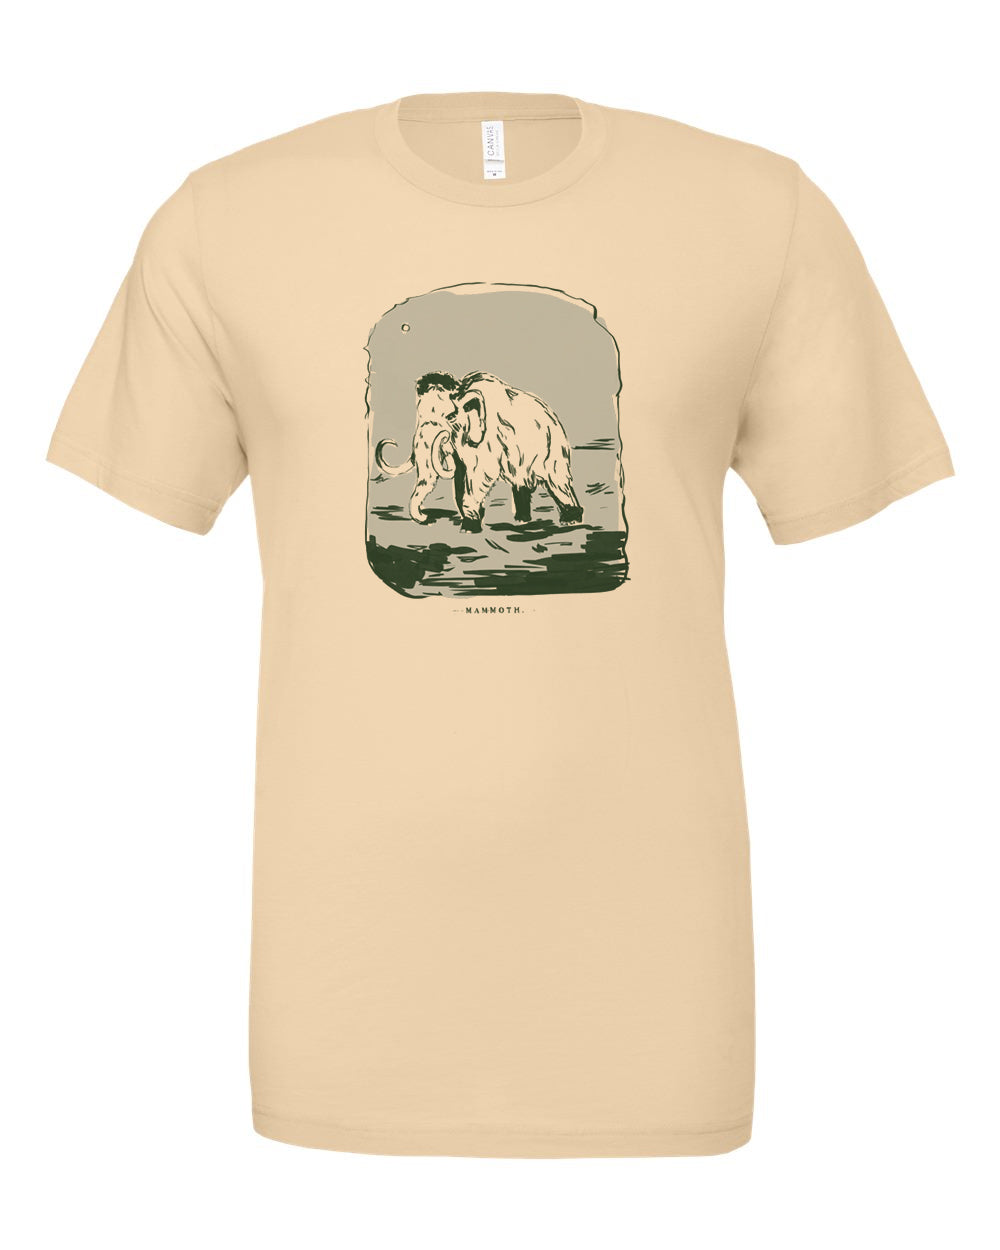 Seth Glier - Mammoth T-Shirt